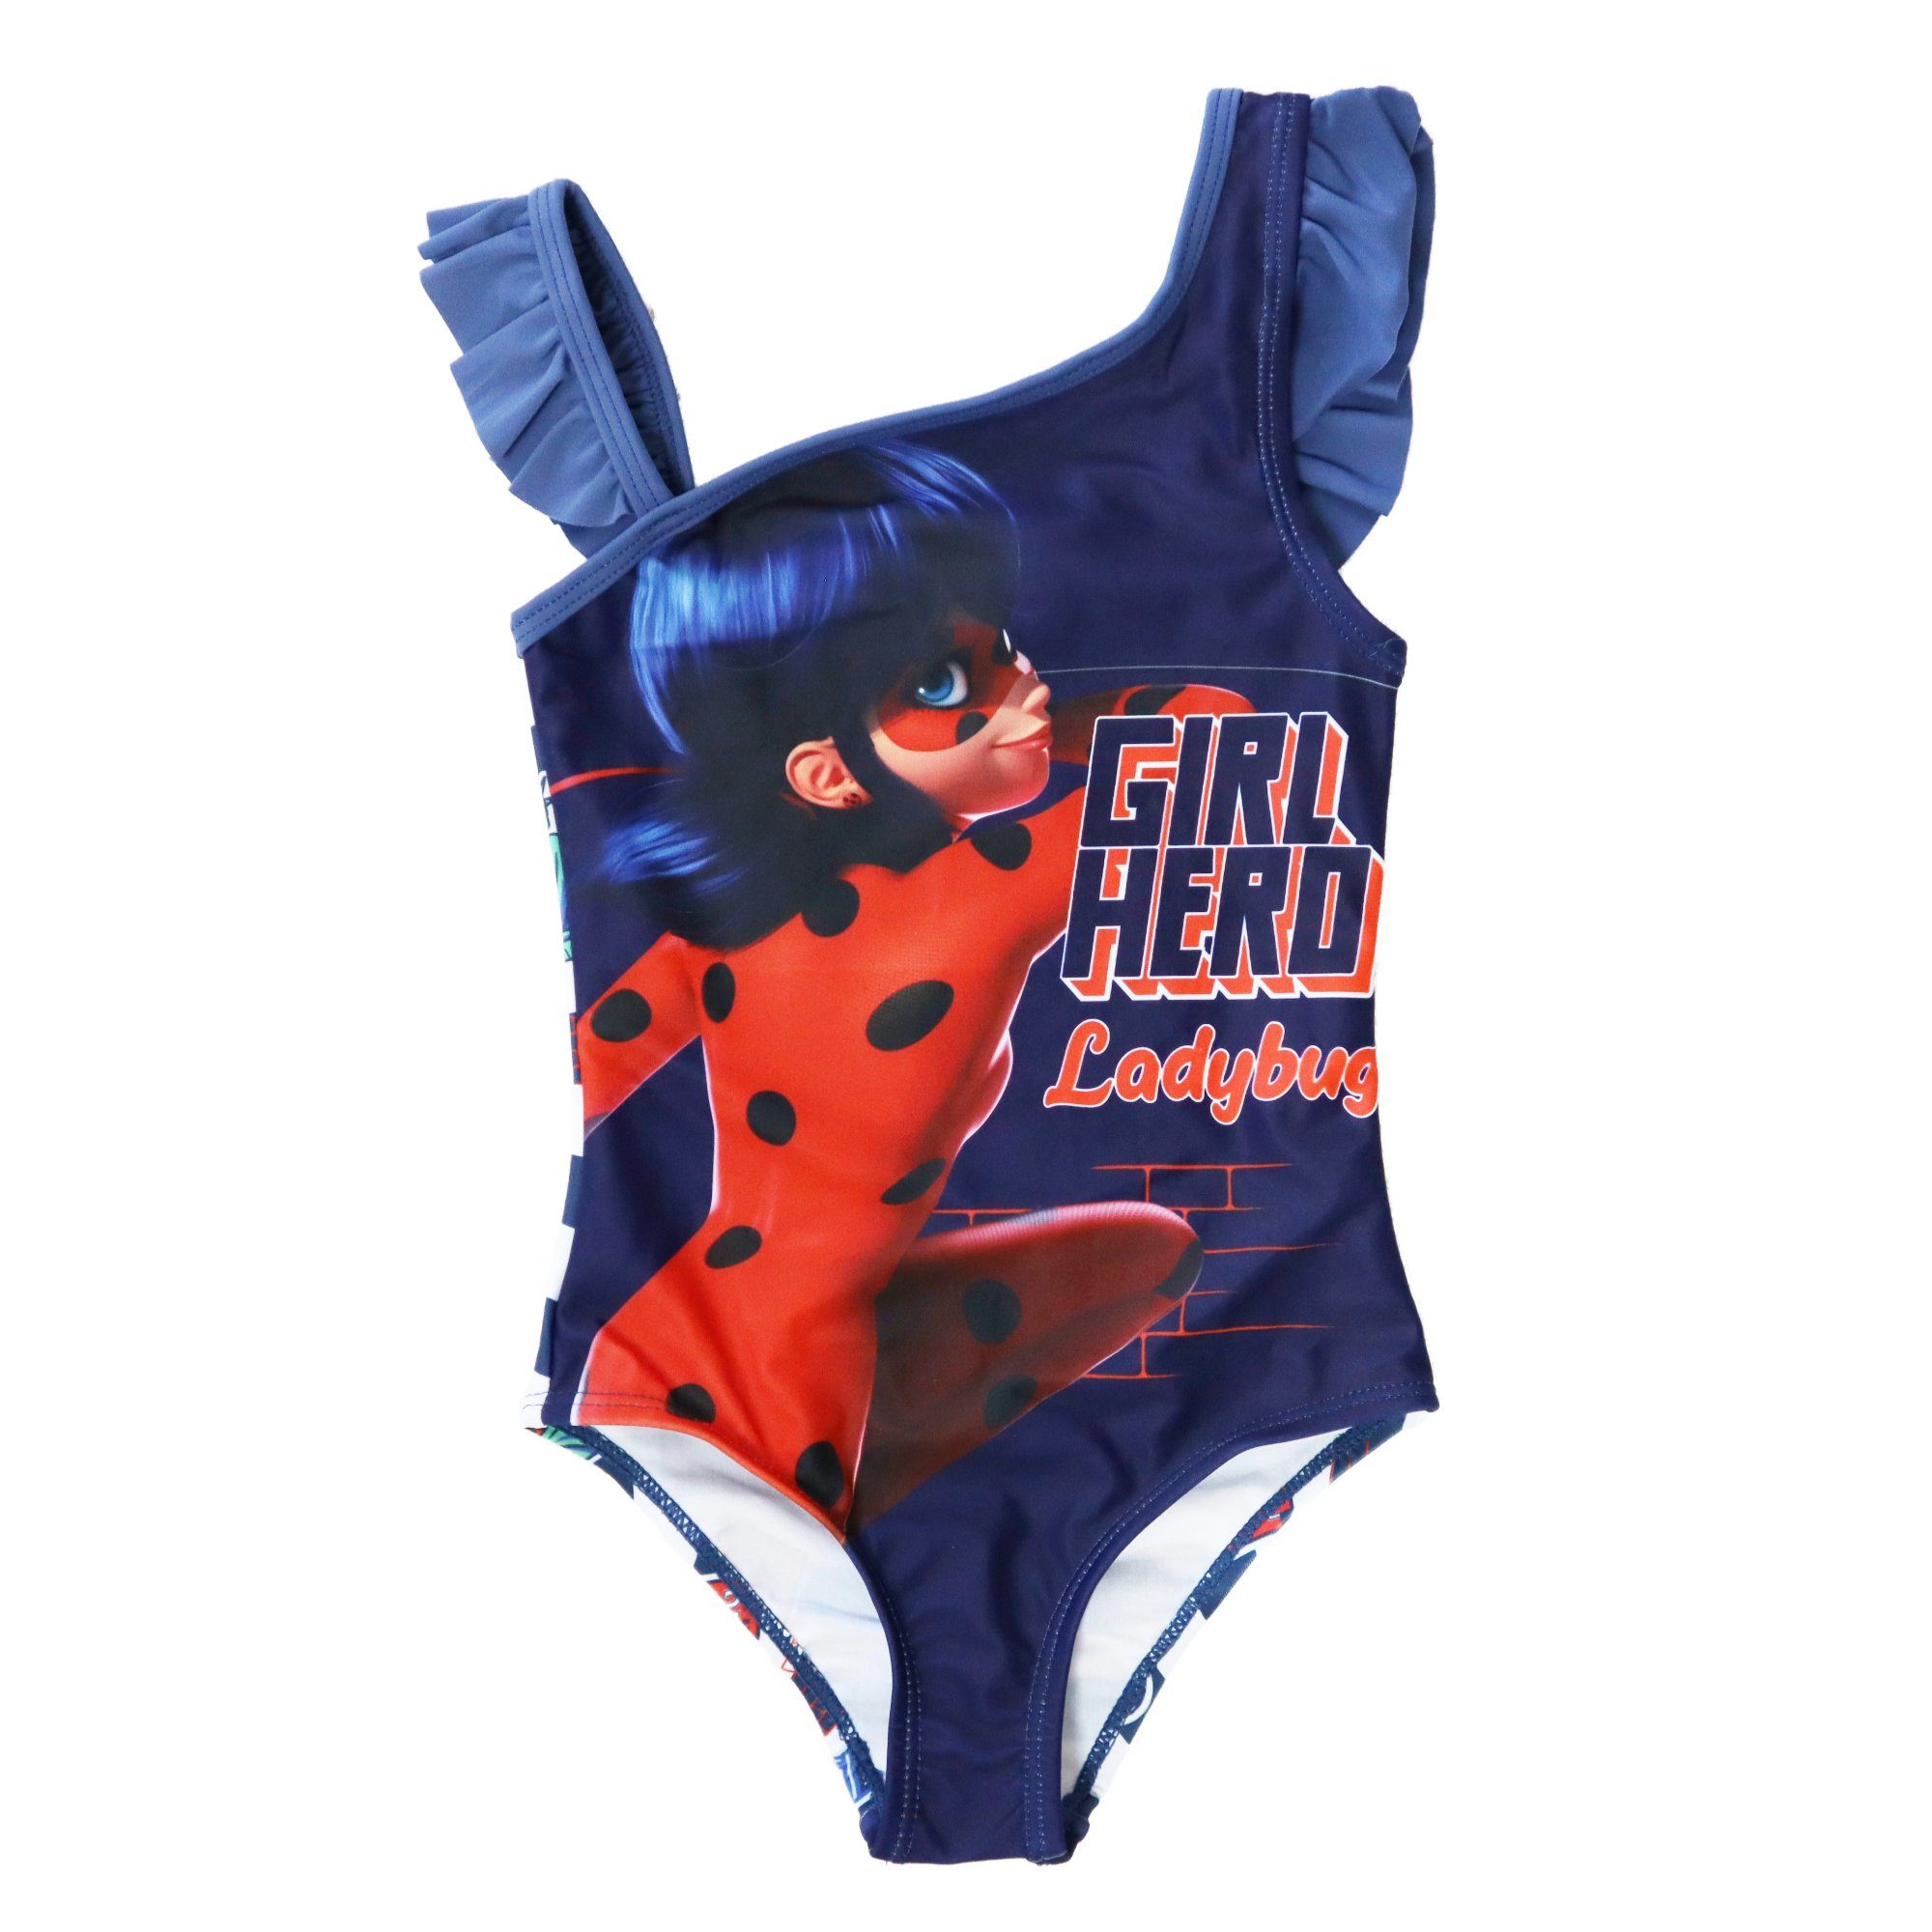 Miraculous - Ladybug Badeanzug Kinder Schwimmanzug Mädchen Bademode Gr. 104 bis 128, Blau oder Rot